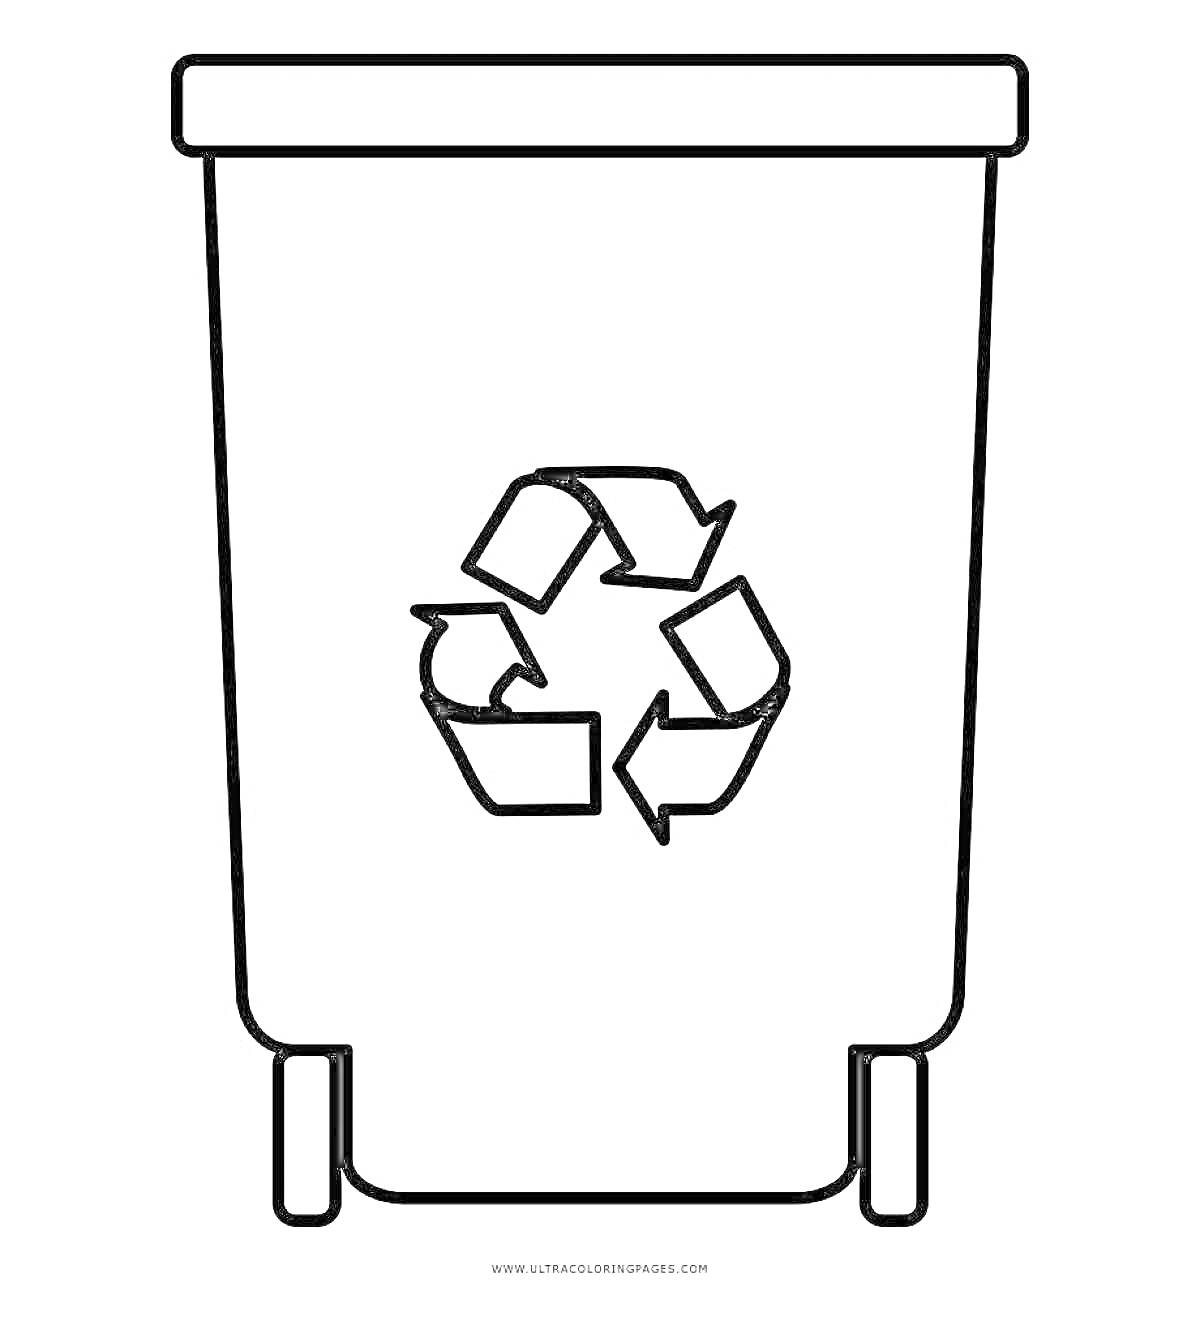 Раскраска Контейнер для мусора с символом переработки